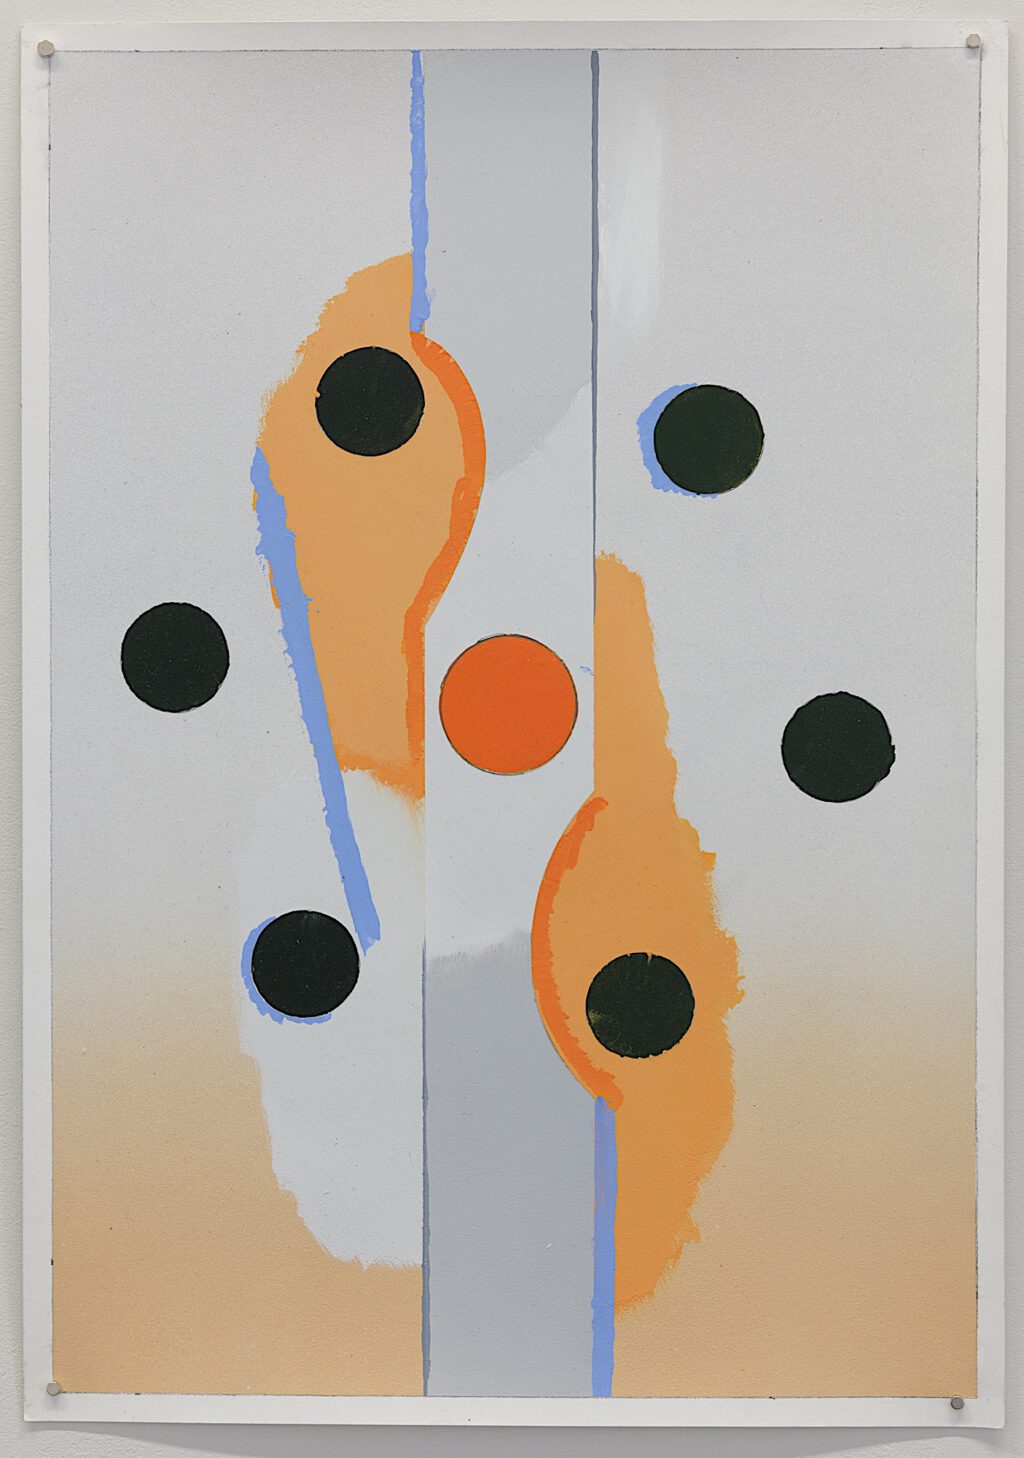 Tomáš Absolon “Untitled” 2023, unique, 55 x 30 cm, acrylic on paper